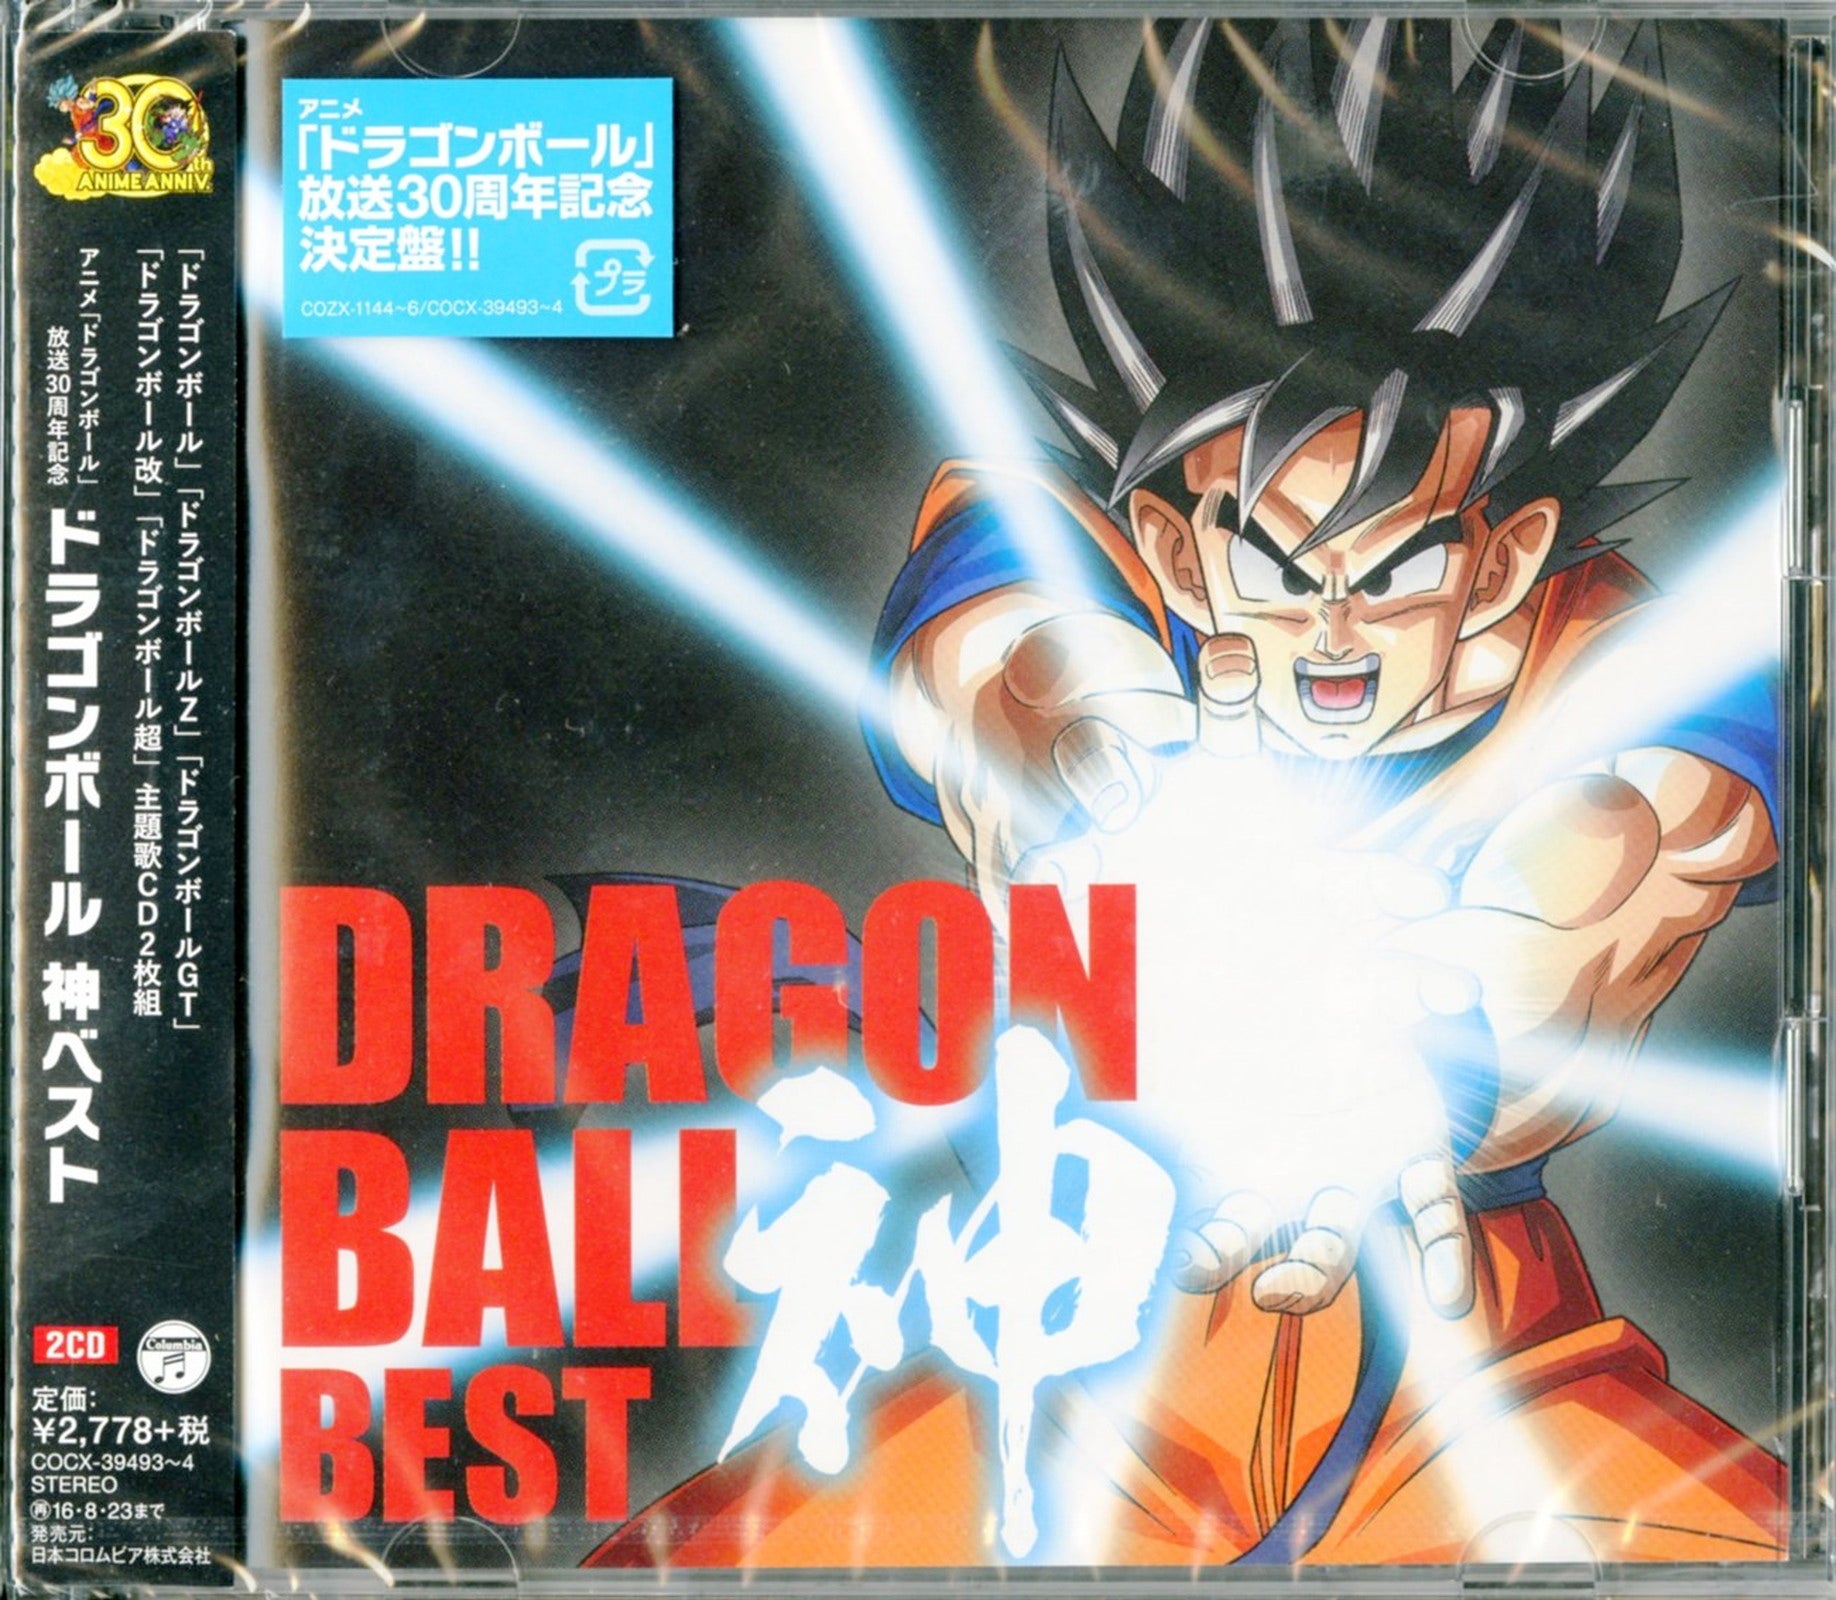 DRAGON BALL Z: BATALHA DOS DEUSES arrecadou US $ 18Milhões no Japão, duas  vezes mais do Dragon Ball Evolution nos EUA. - CLARIM DIÁRIO